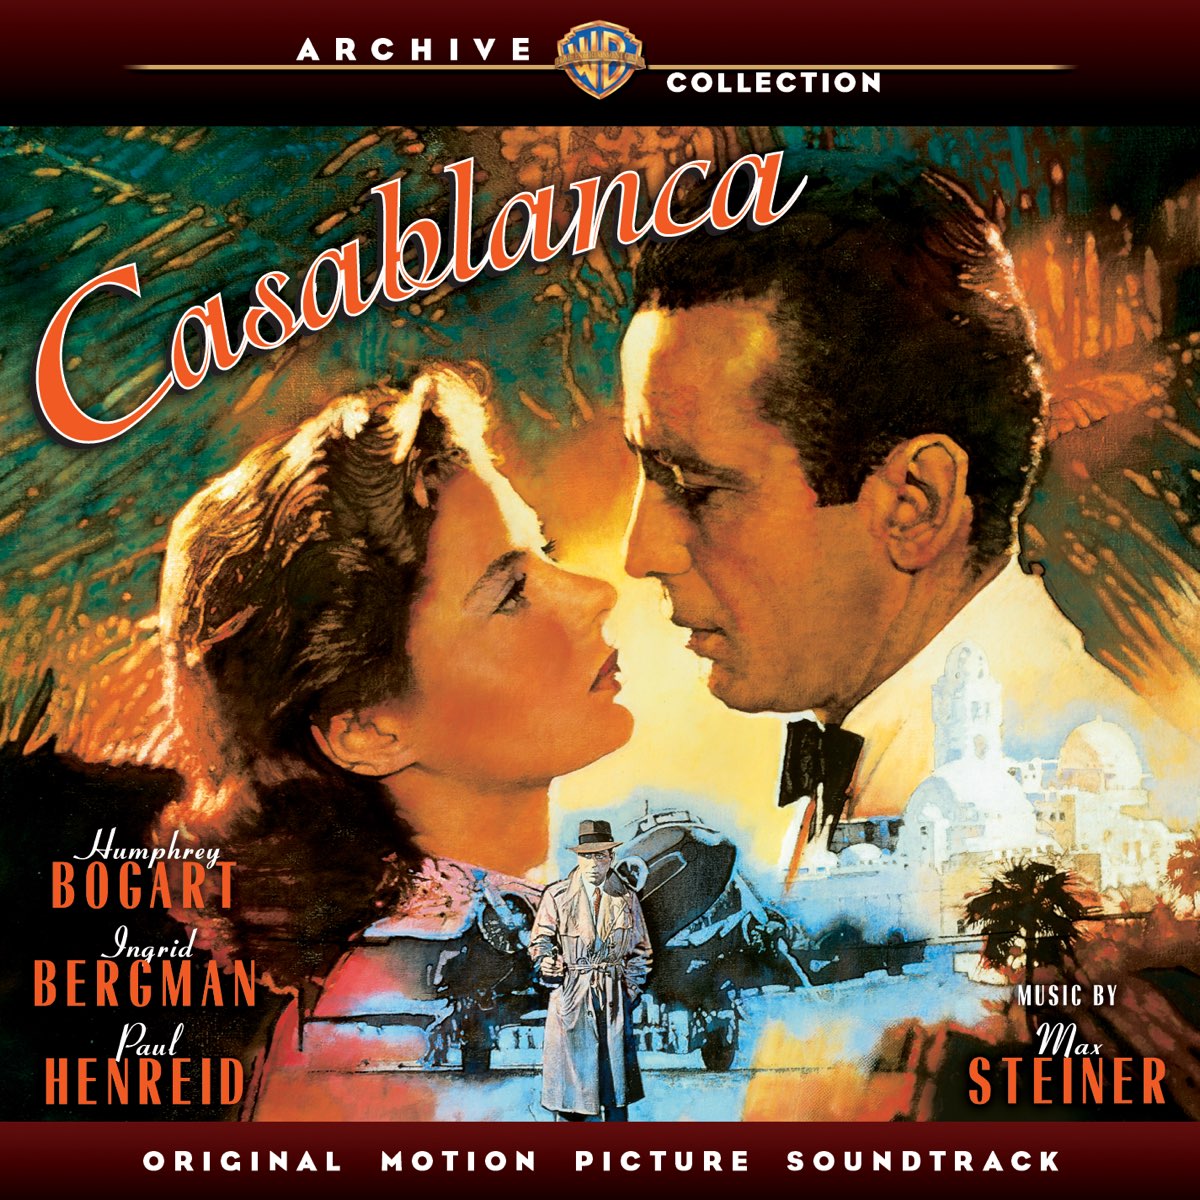 ‎Casablanca (Original Motion Picture Soundtrack) – Album par  Multi-interprètes – Apple Music